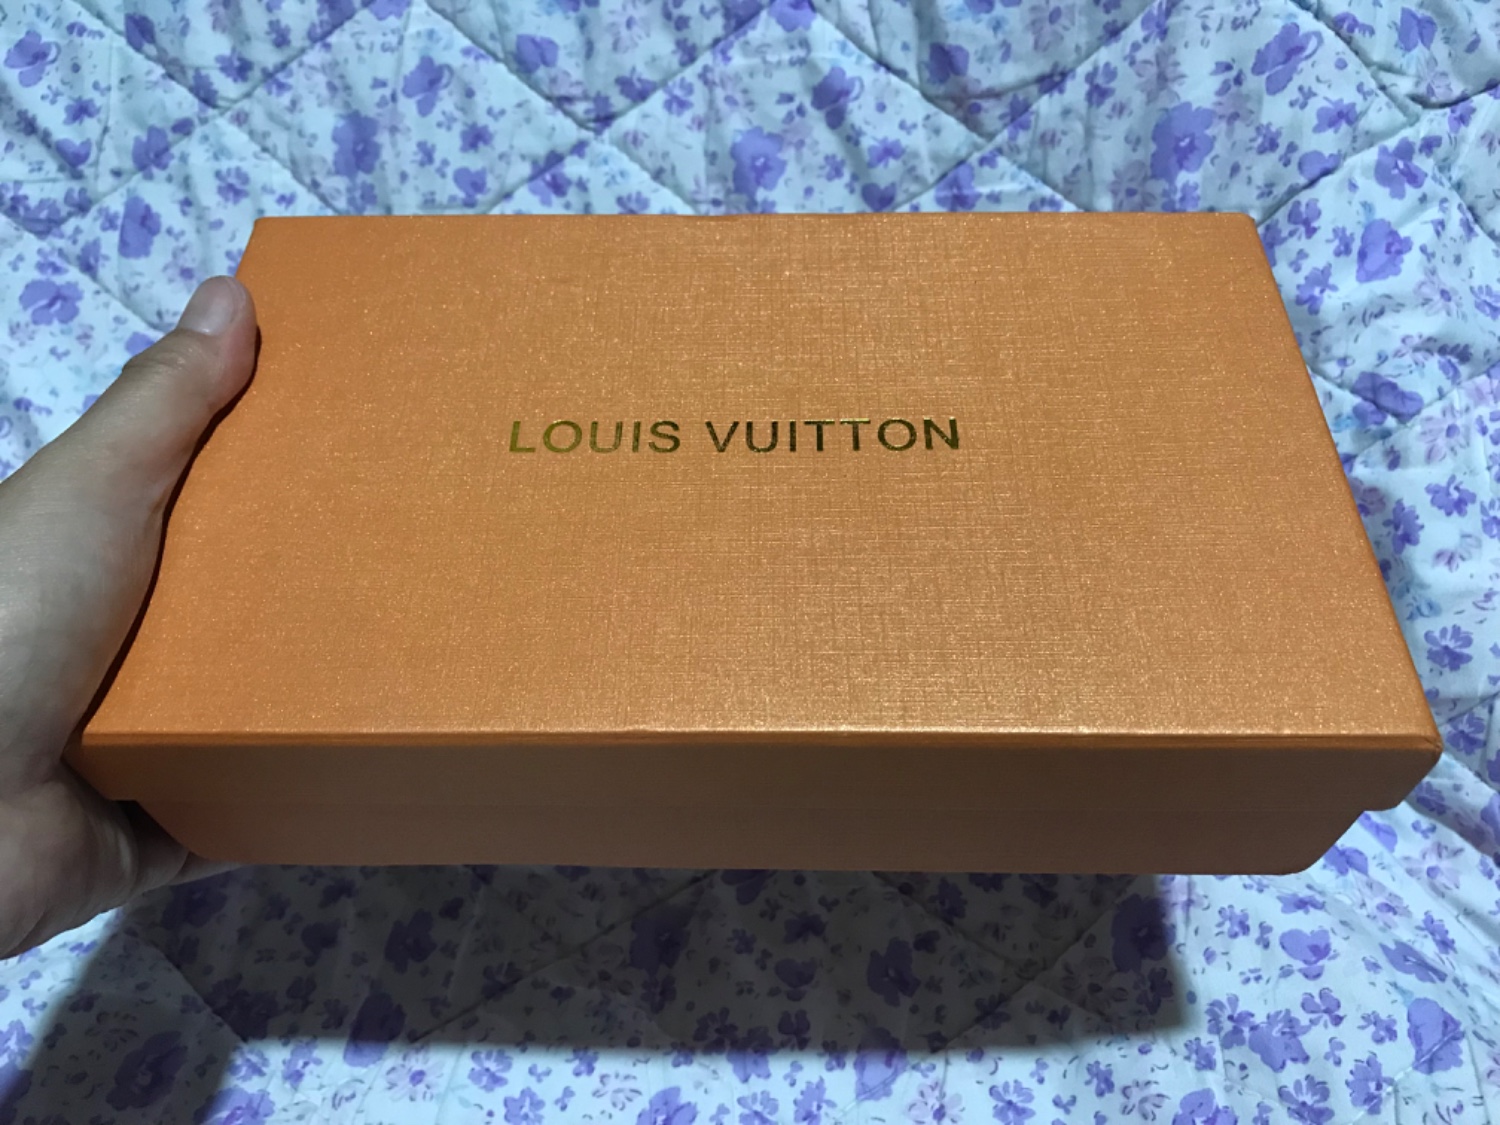 ZNATE LI GDJE MOŽETE NAJJEFTINIJE kupiti omiljenu Louis Vuitton